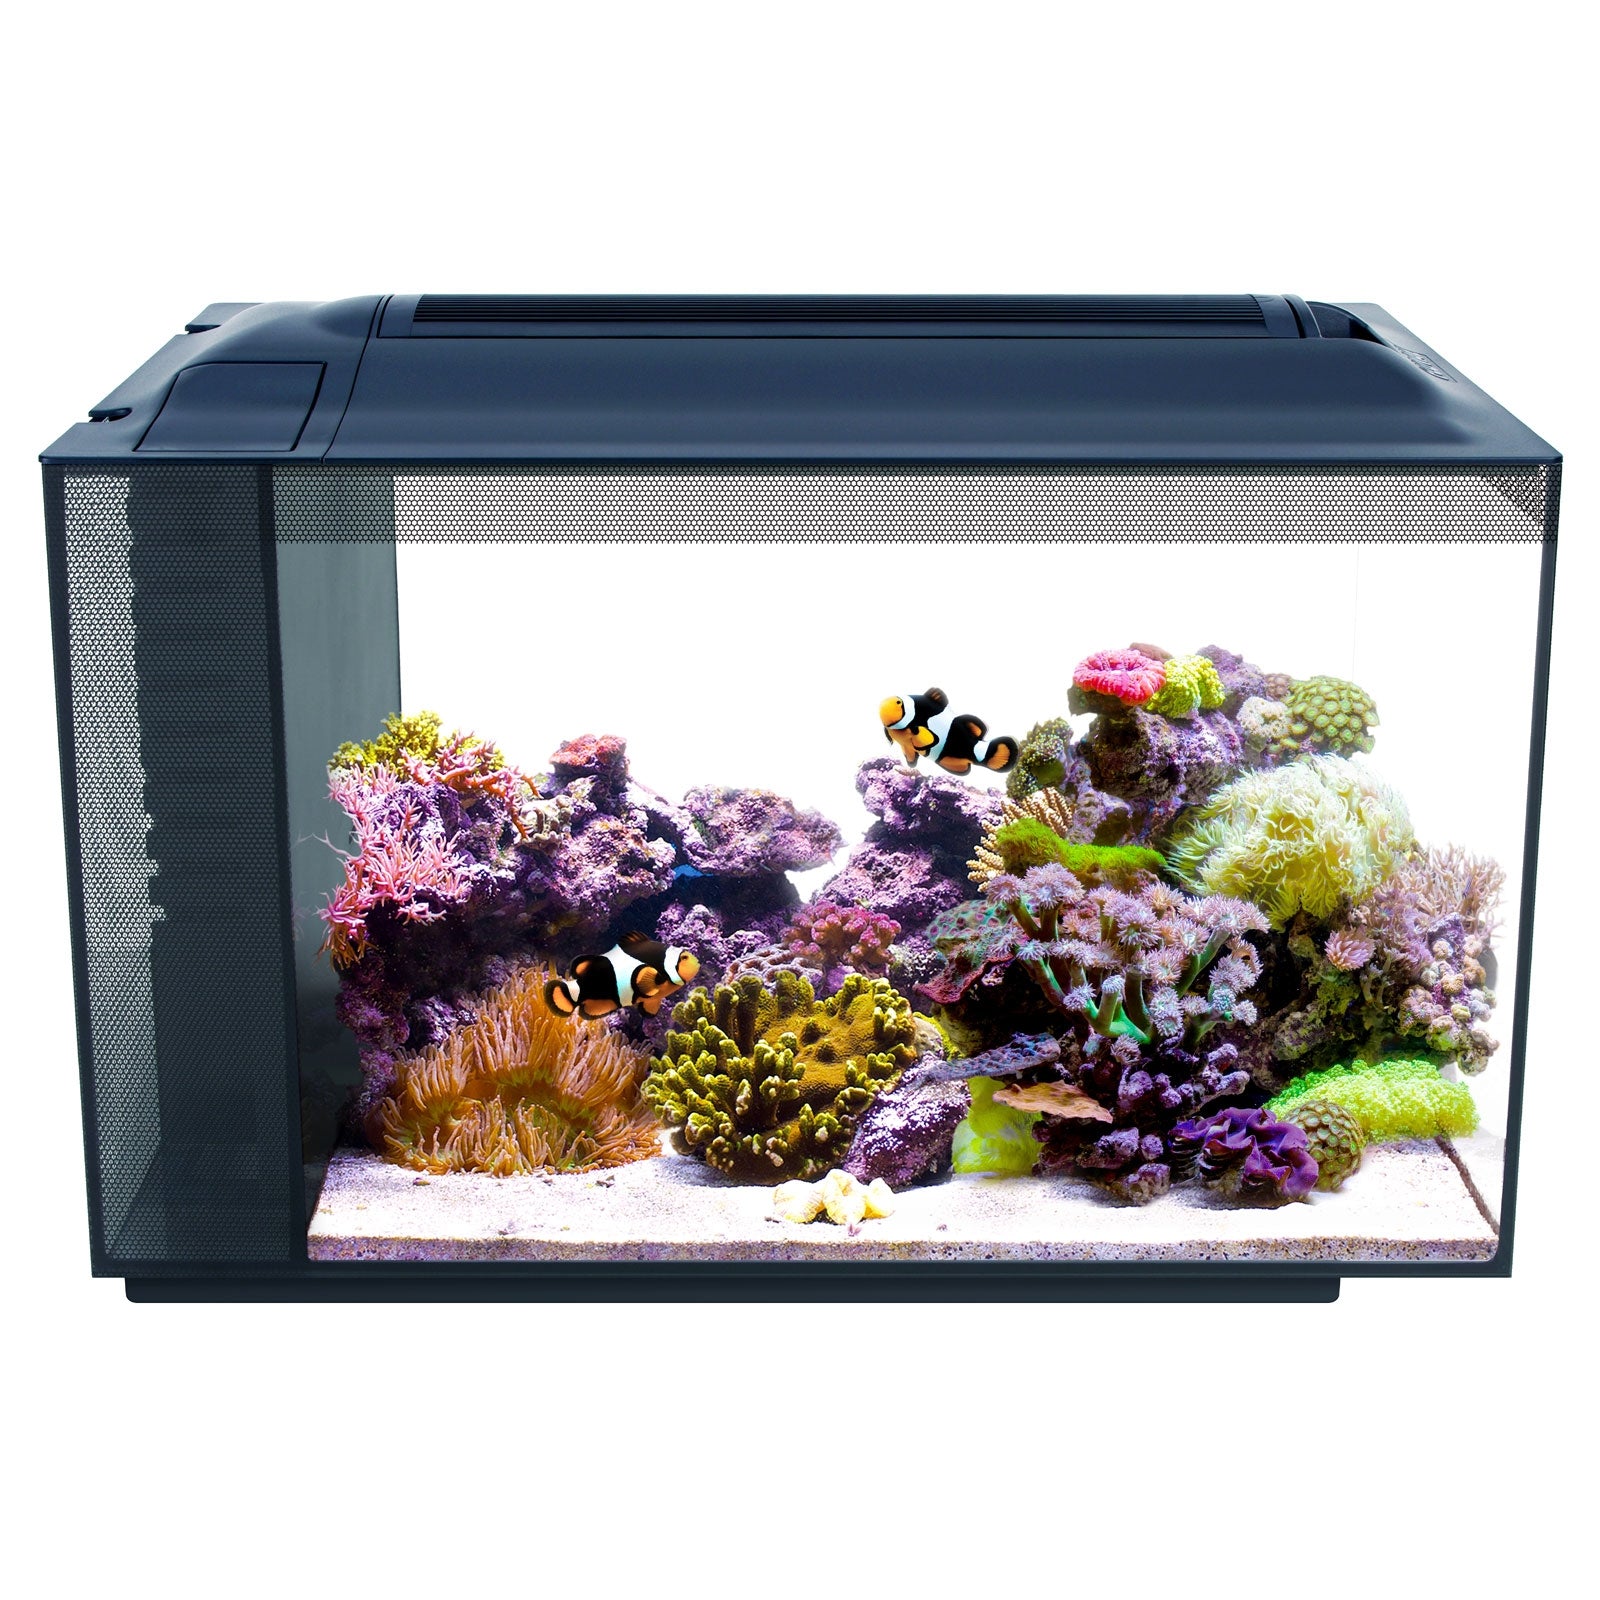 Fluval Evo Marine Aquarium Kit with Reef LED Lights - 52 ltr